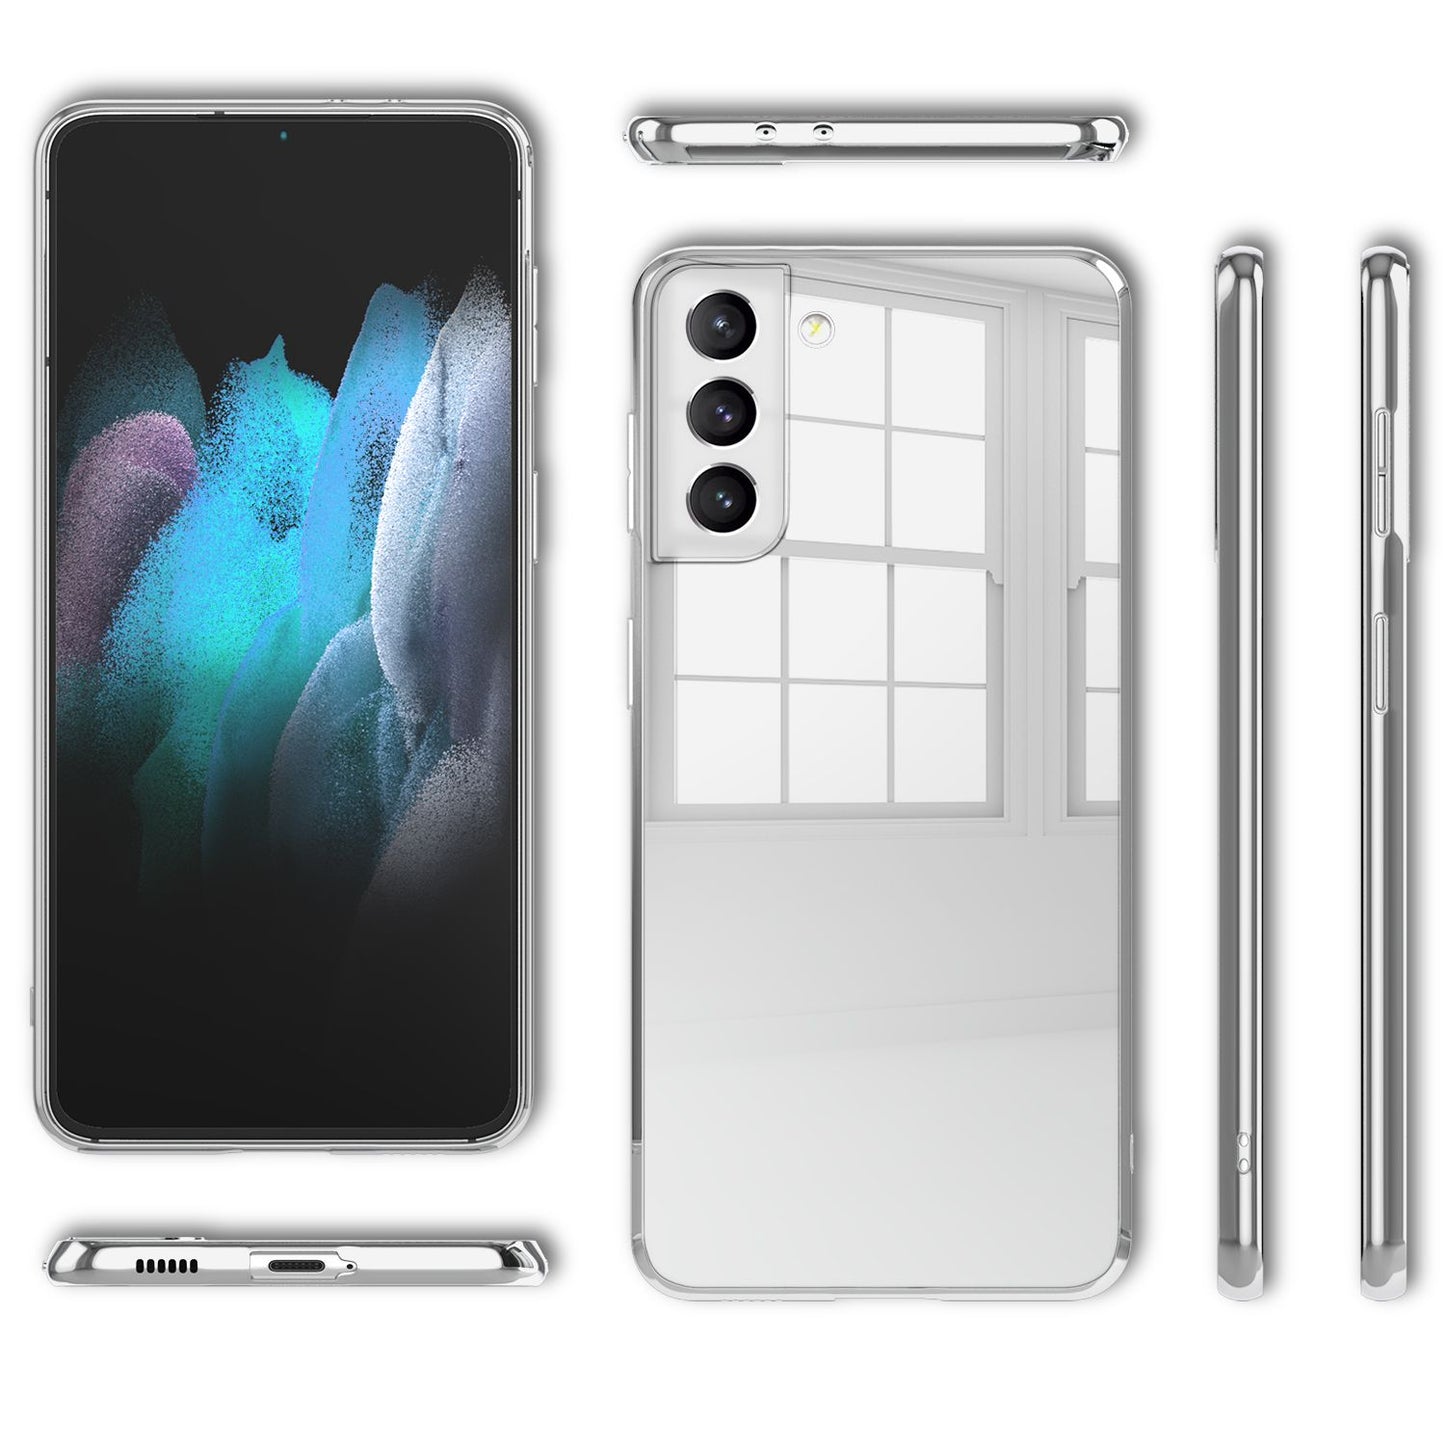 NALIA Spiegel Hartglas Case für Samsung Galaxy S21 Plus, Klarer Spiegeleffekt Mirror Hardcase Kratzfest, 9H Tempered Glass & Silikon Bumper, Dünne Schutzhülle Glashülle Handyhülle